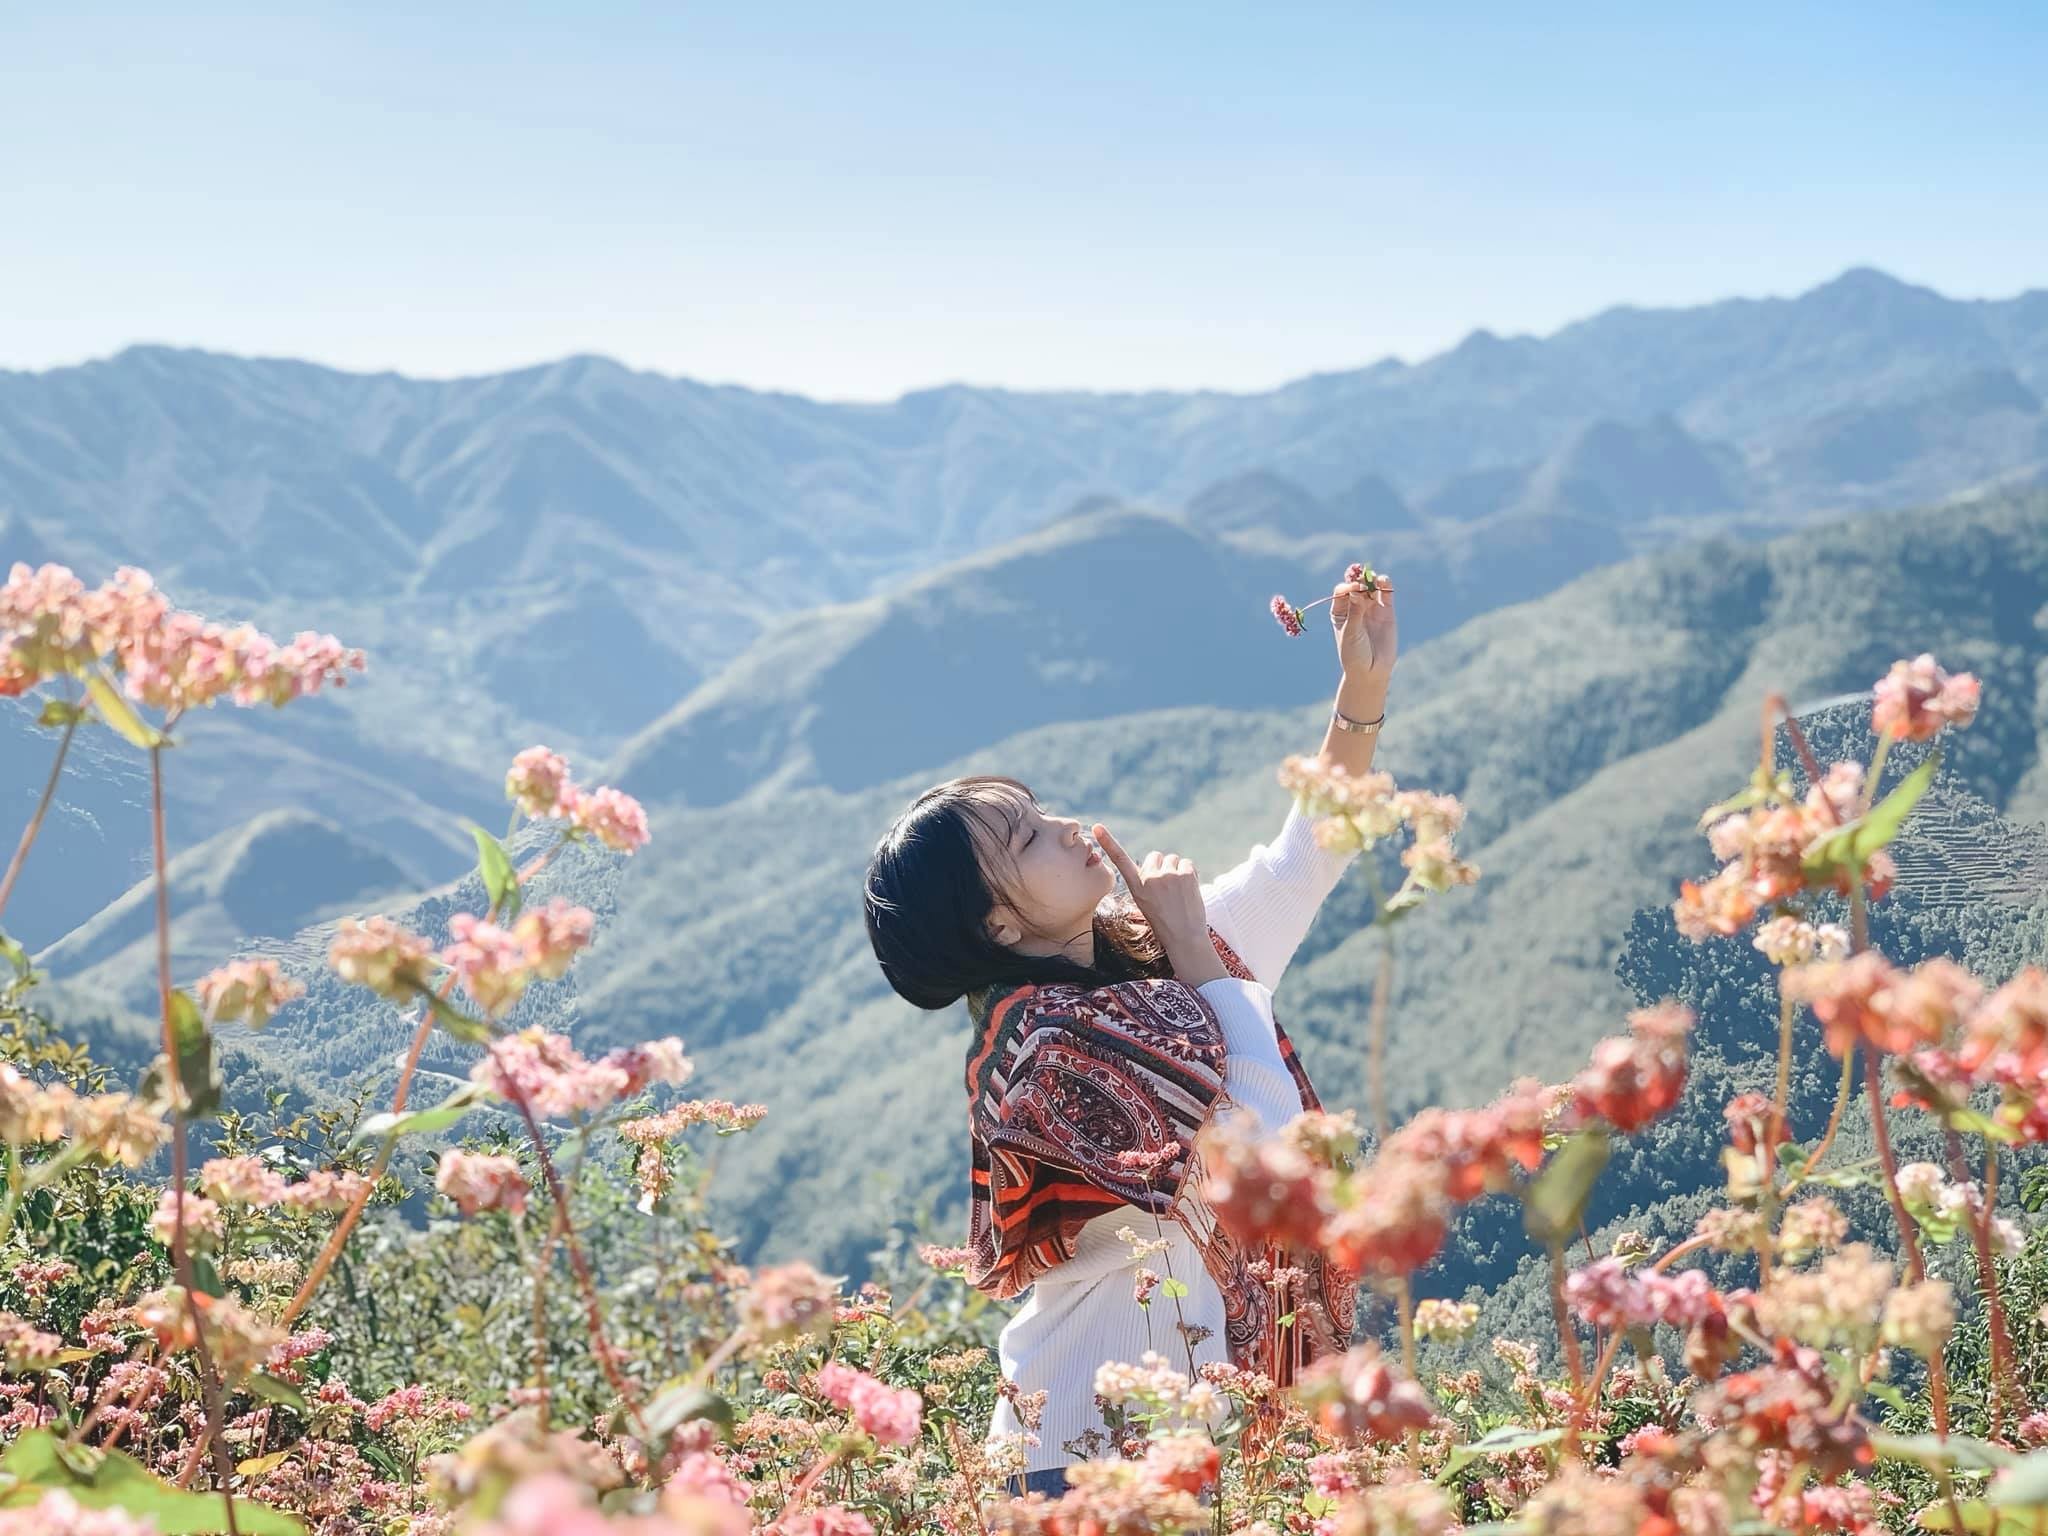 Về Hà Giang tháng 9 - Mùa lúa mùa hoa đẹp nhất trong năm